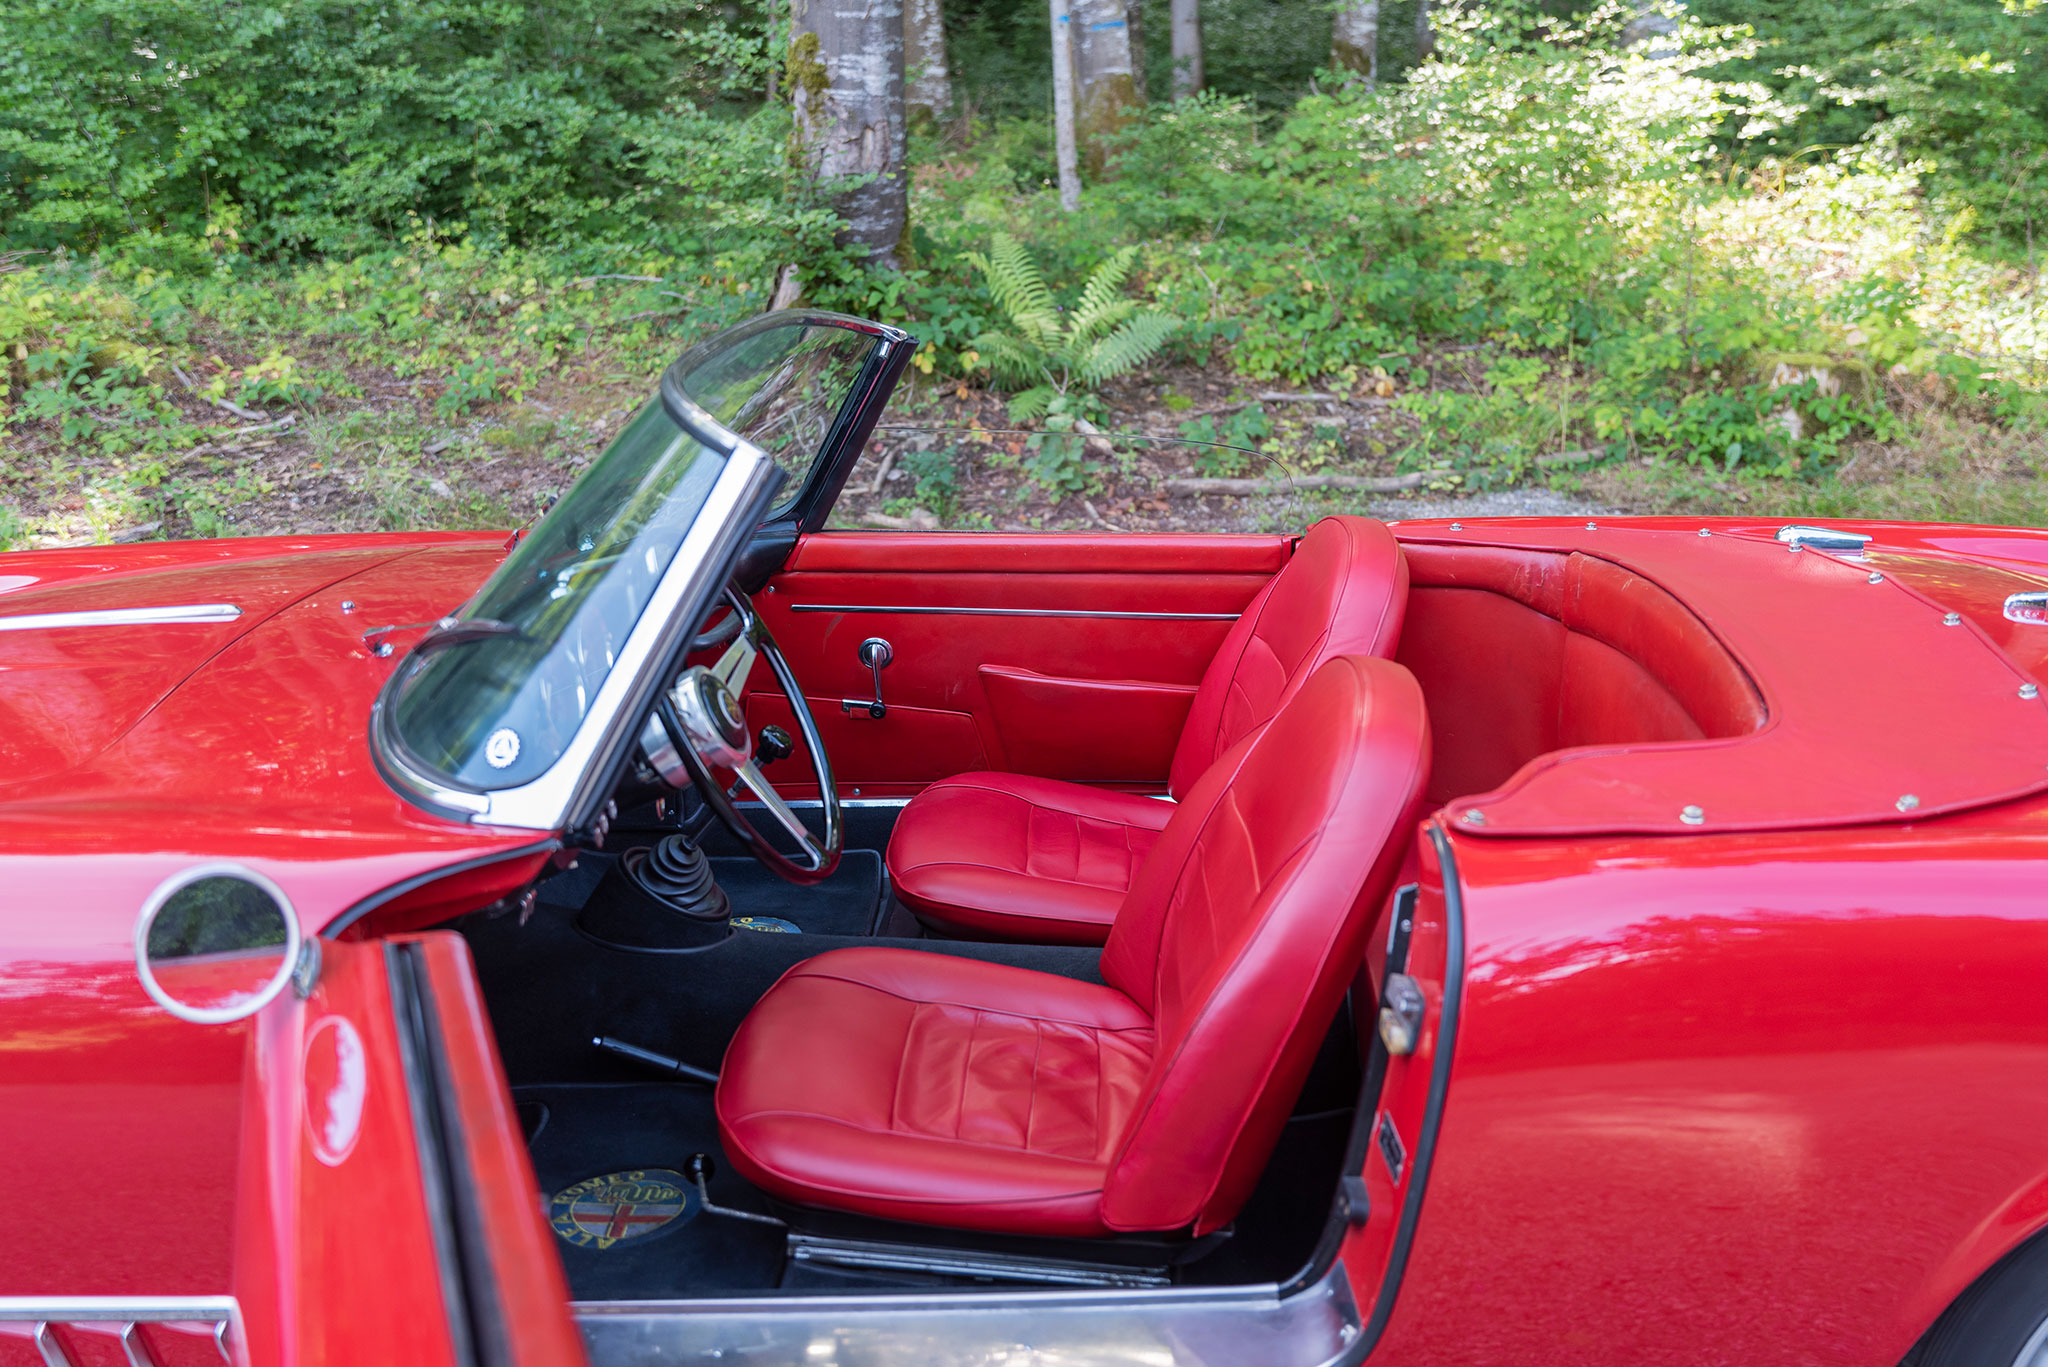 1960 Alfa Romeo 2000 Spider Touring – stricte deux places . La partie derrière les sièges permet d’y loger sacs ou petites valises.